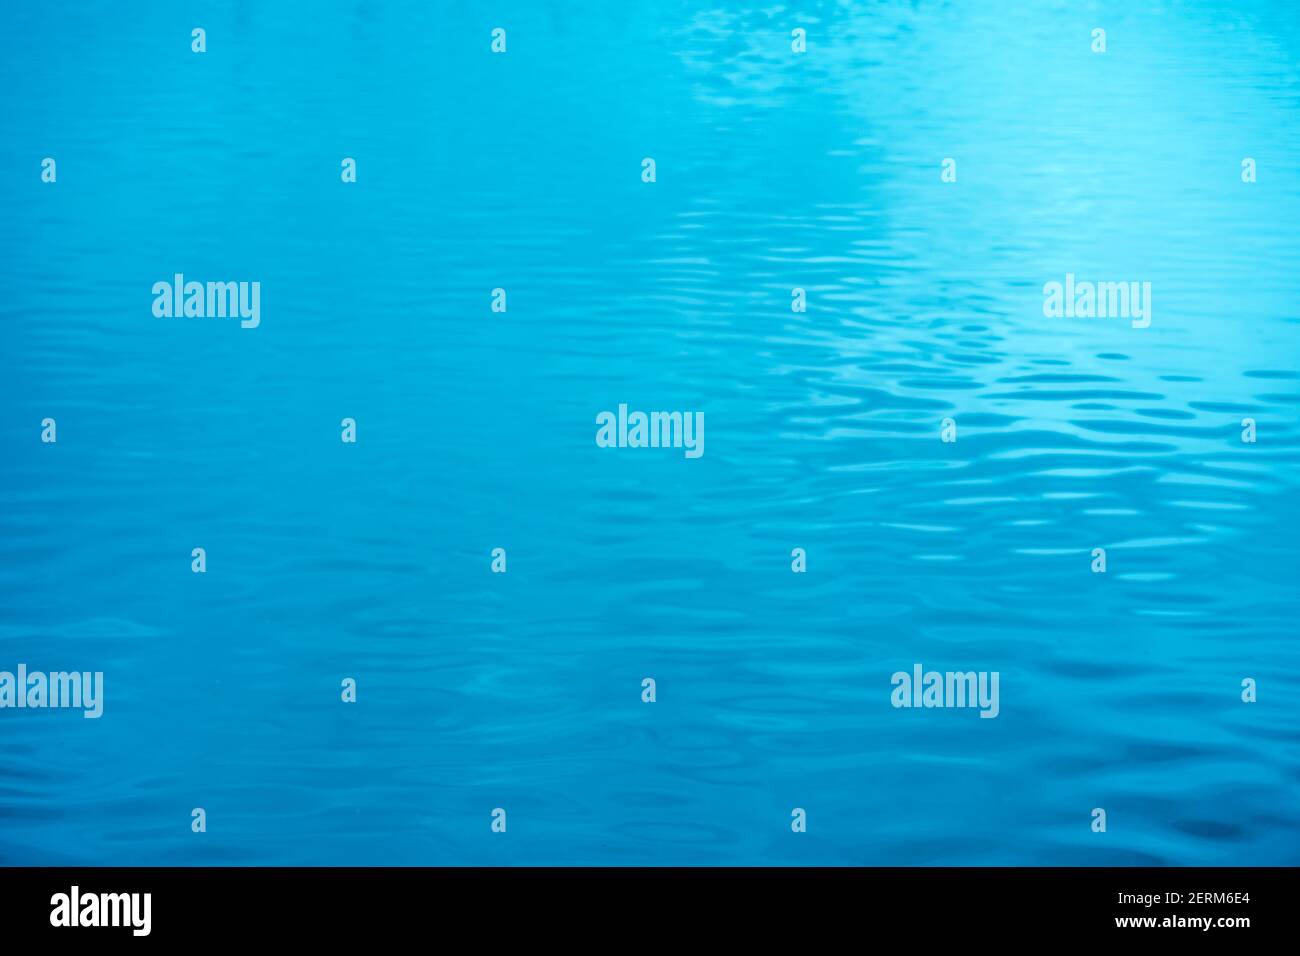 Bleu océan vagues texture fond pour la conception ou le site Web de bannière Banque D'Images